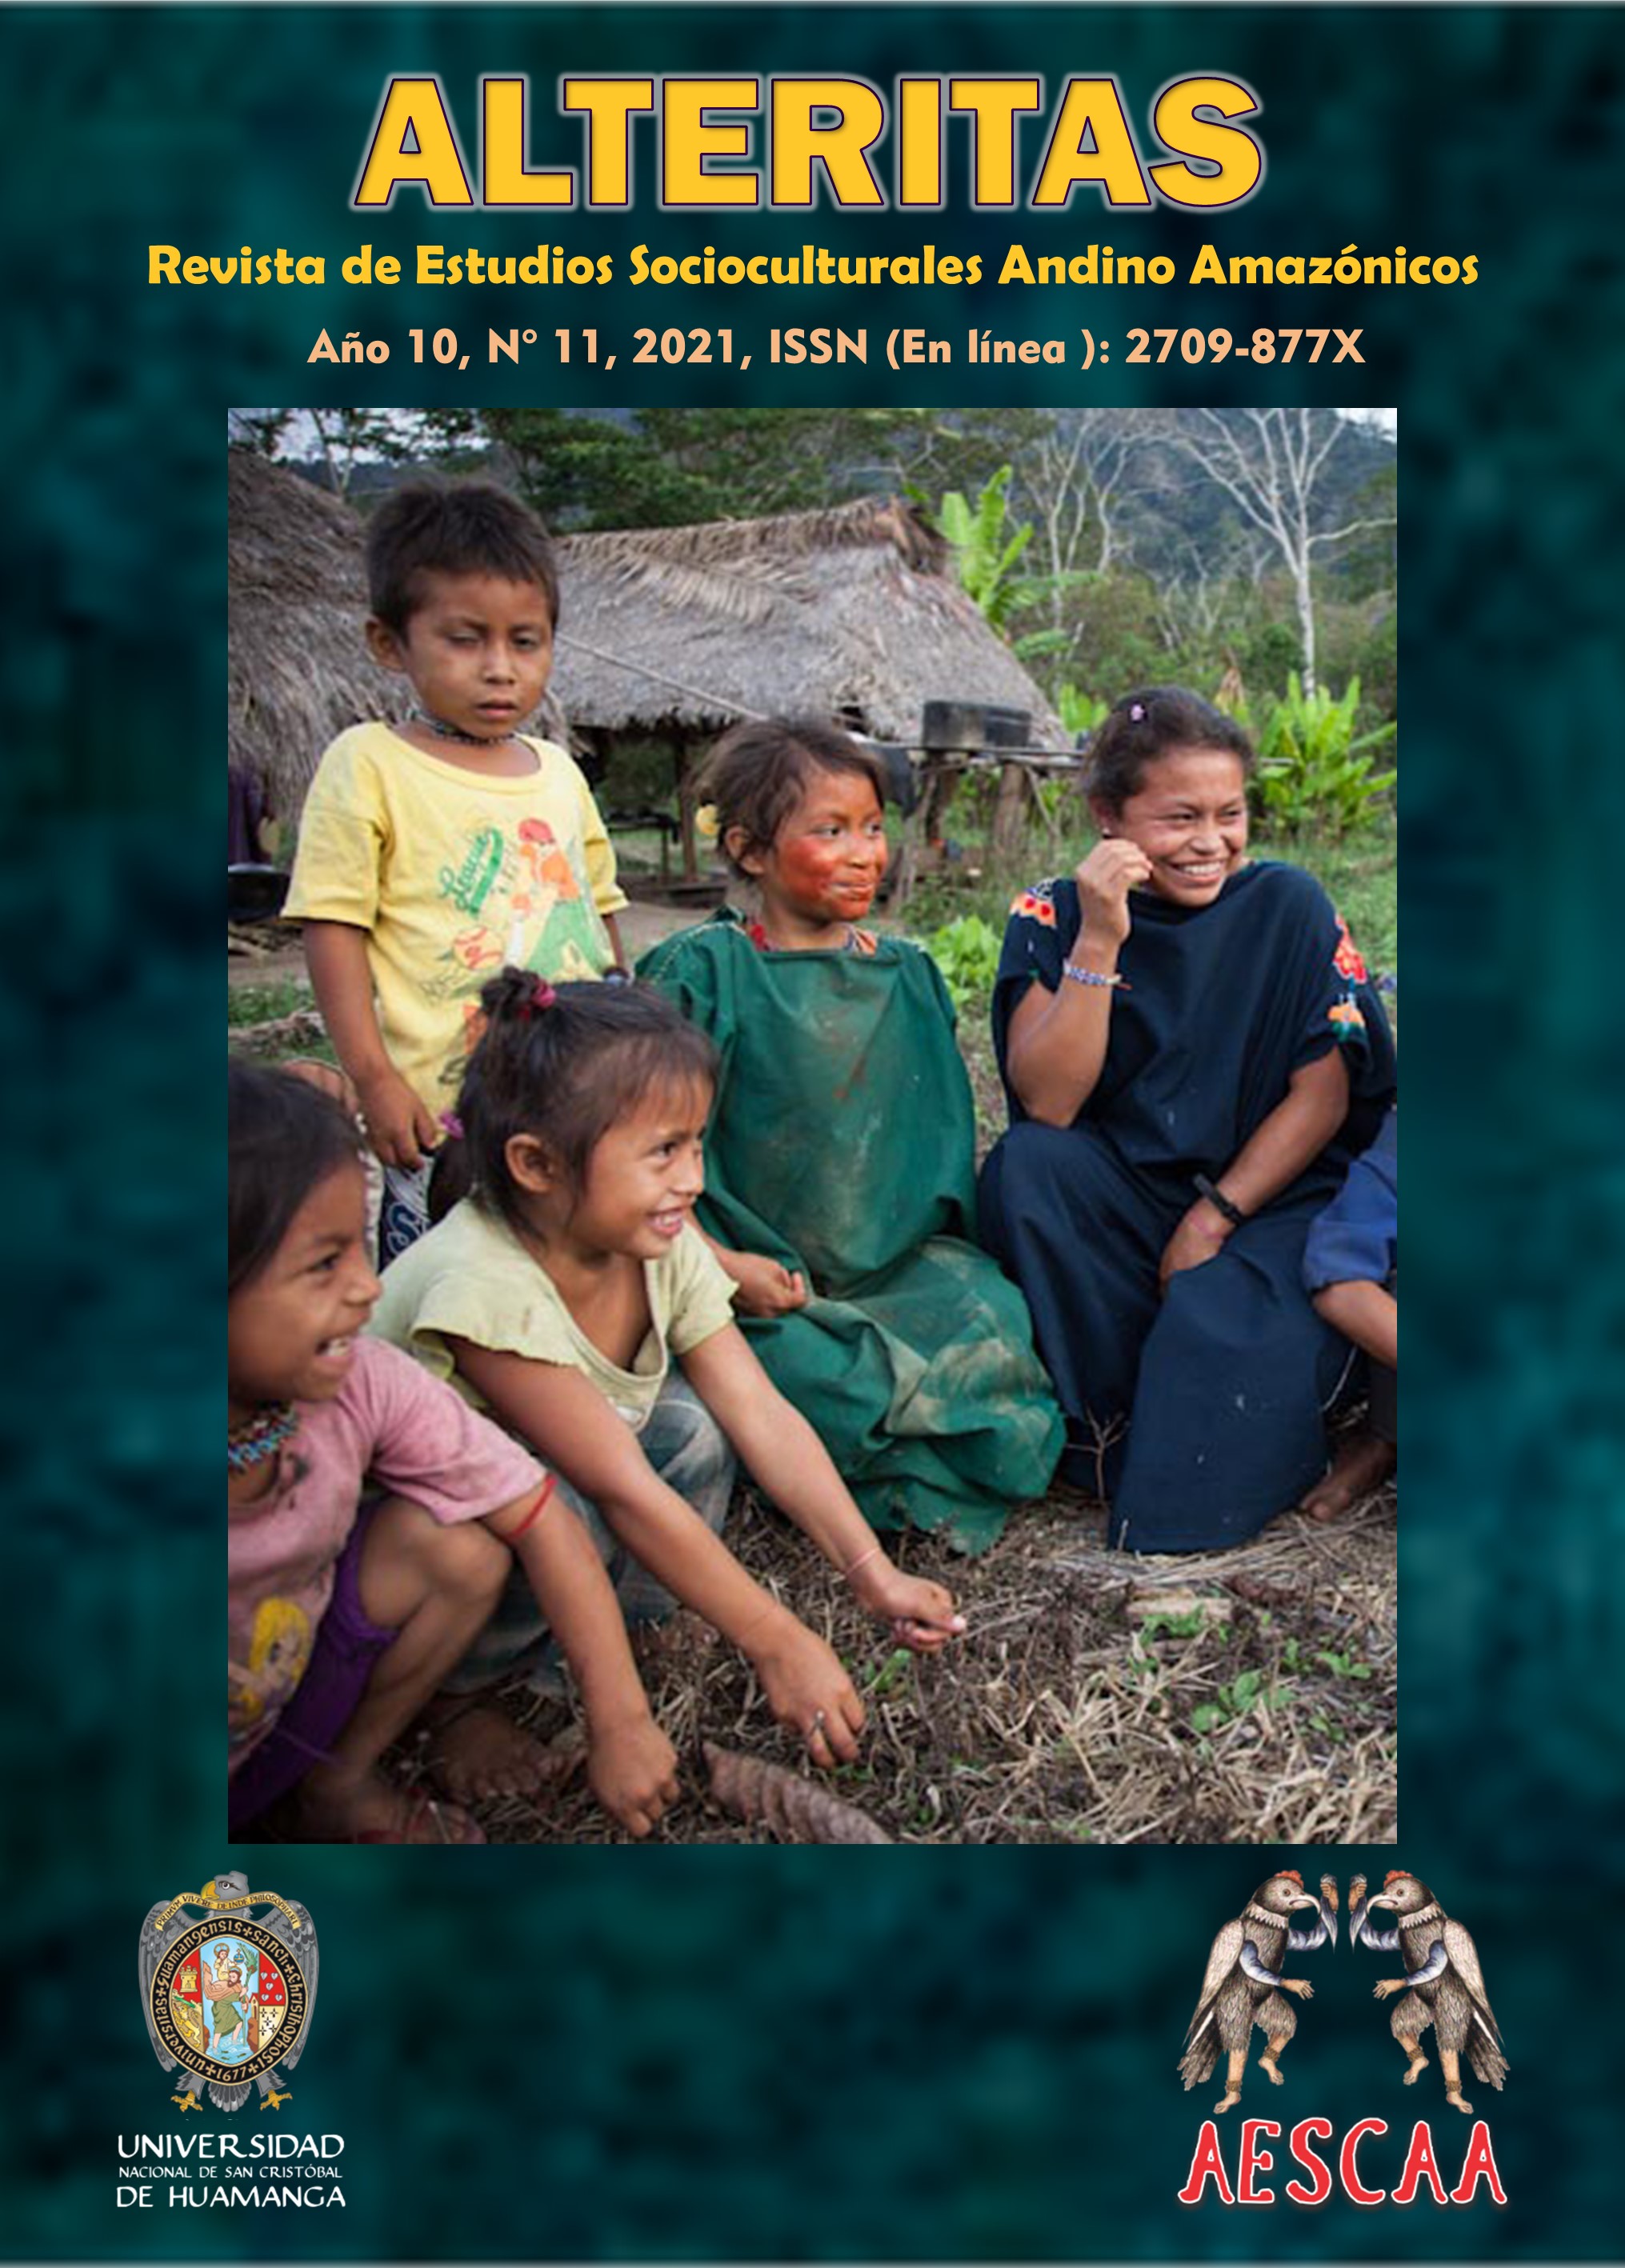 					View Vol. 10 No. 11 (2021): Alteritas. Revista de Estudios Socioculturales Andino Amazónicos
				